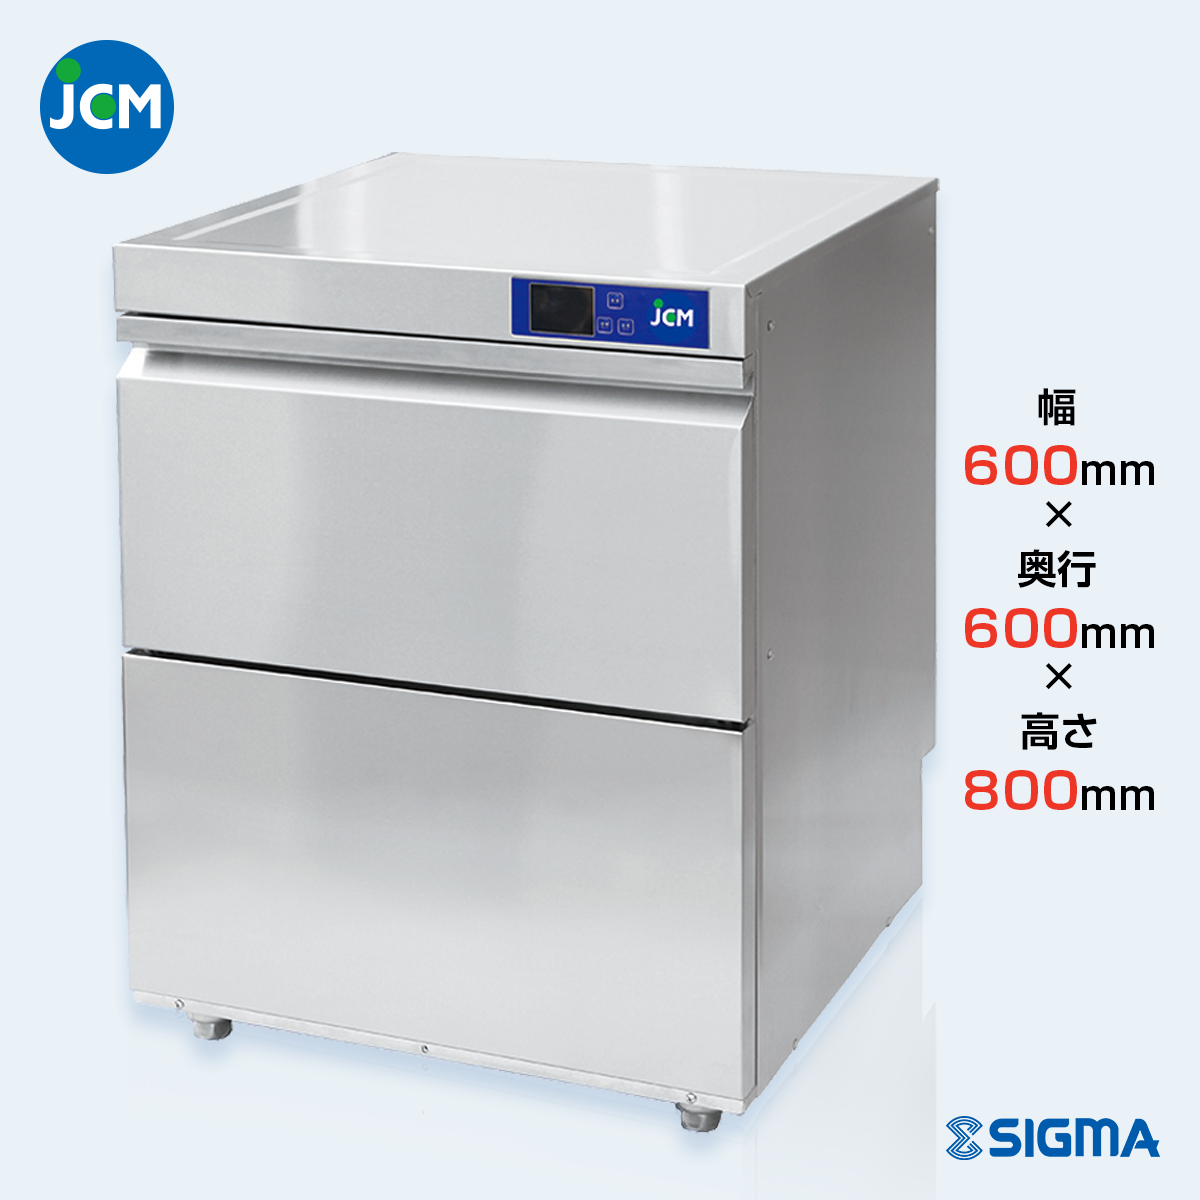 JCMD-40U1 業務用食器洗浄機／幅600×奥行600×高さ800mm